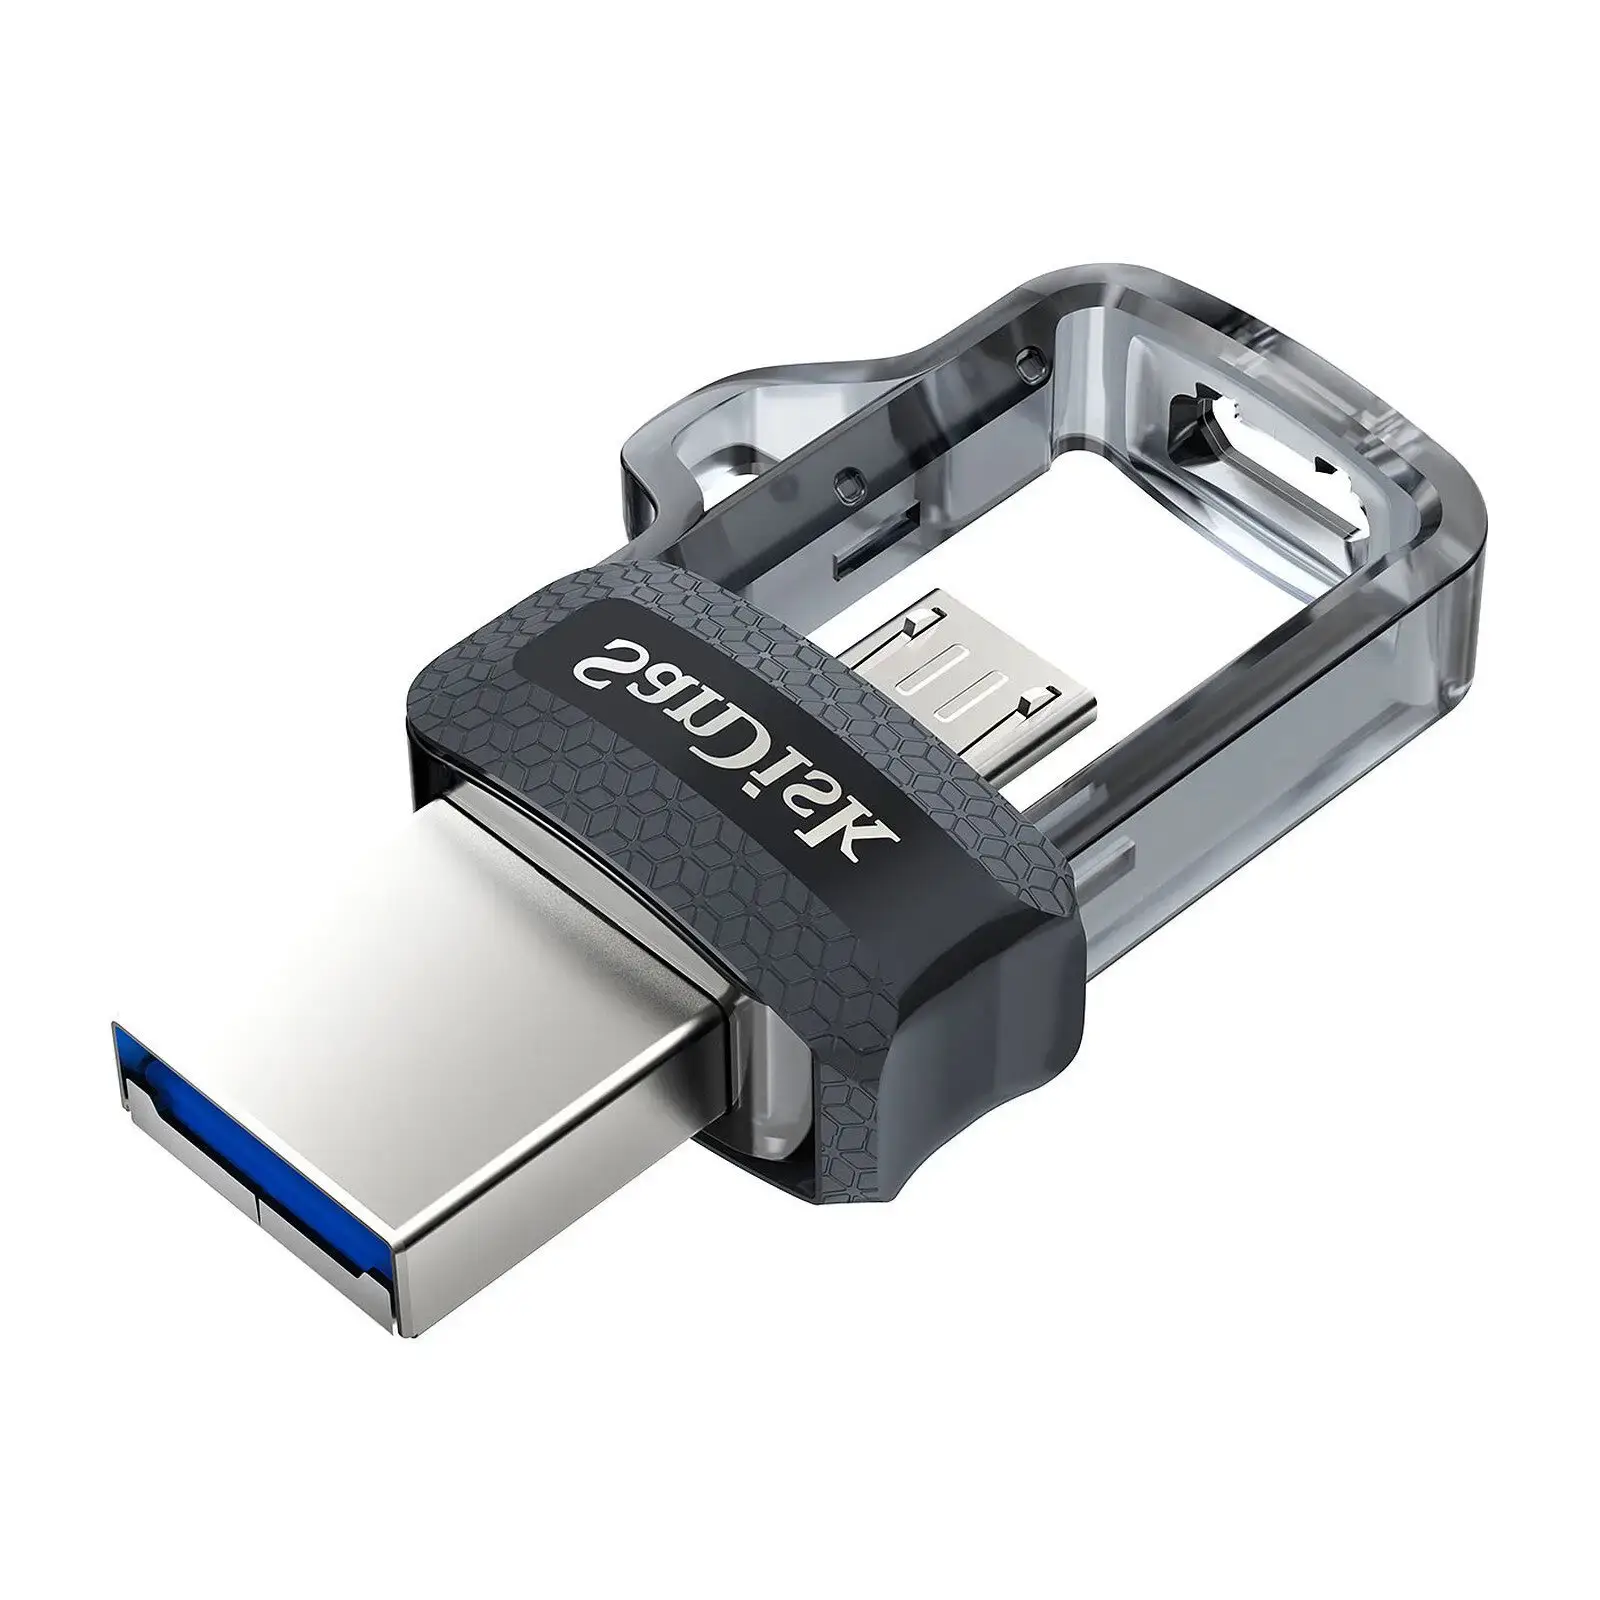 Clé USB SanDisk Ultra m3.0 double connectique micro-USB et USB 3.0 - 128 Go  (SDDD3-128G-G46) prix Maroc